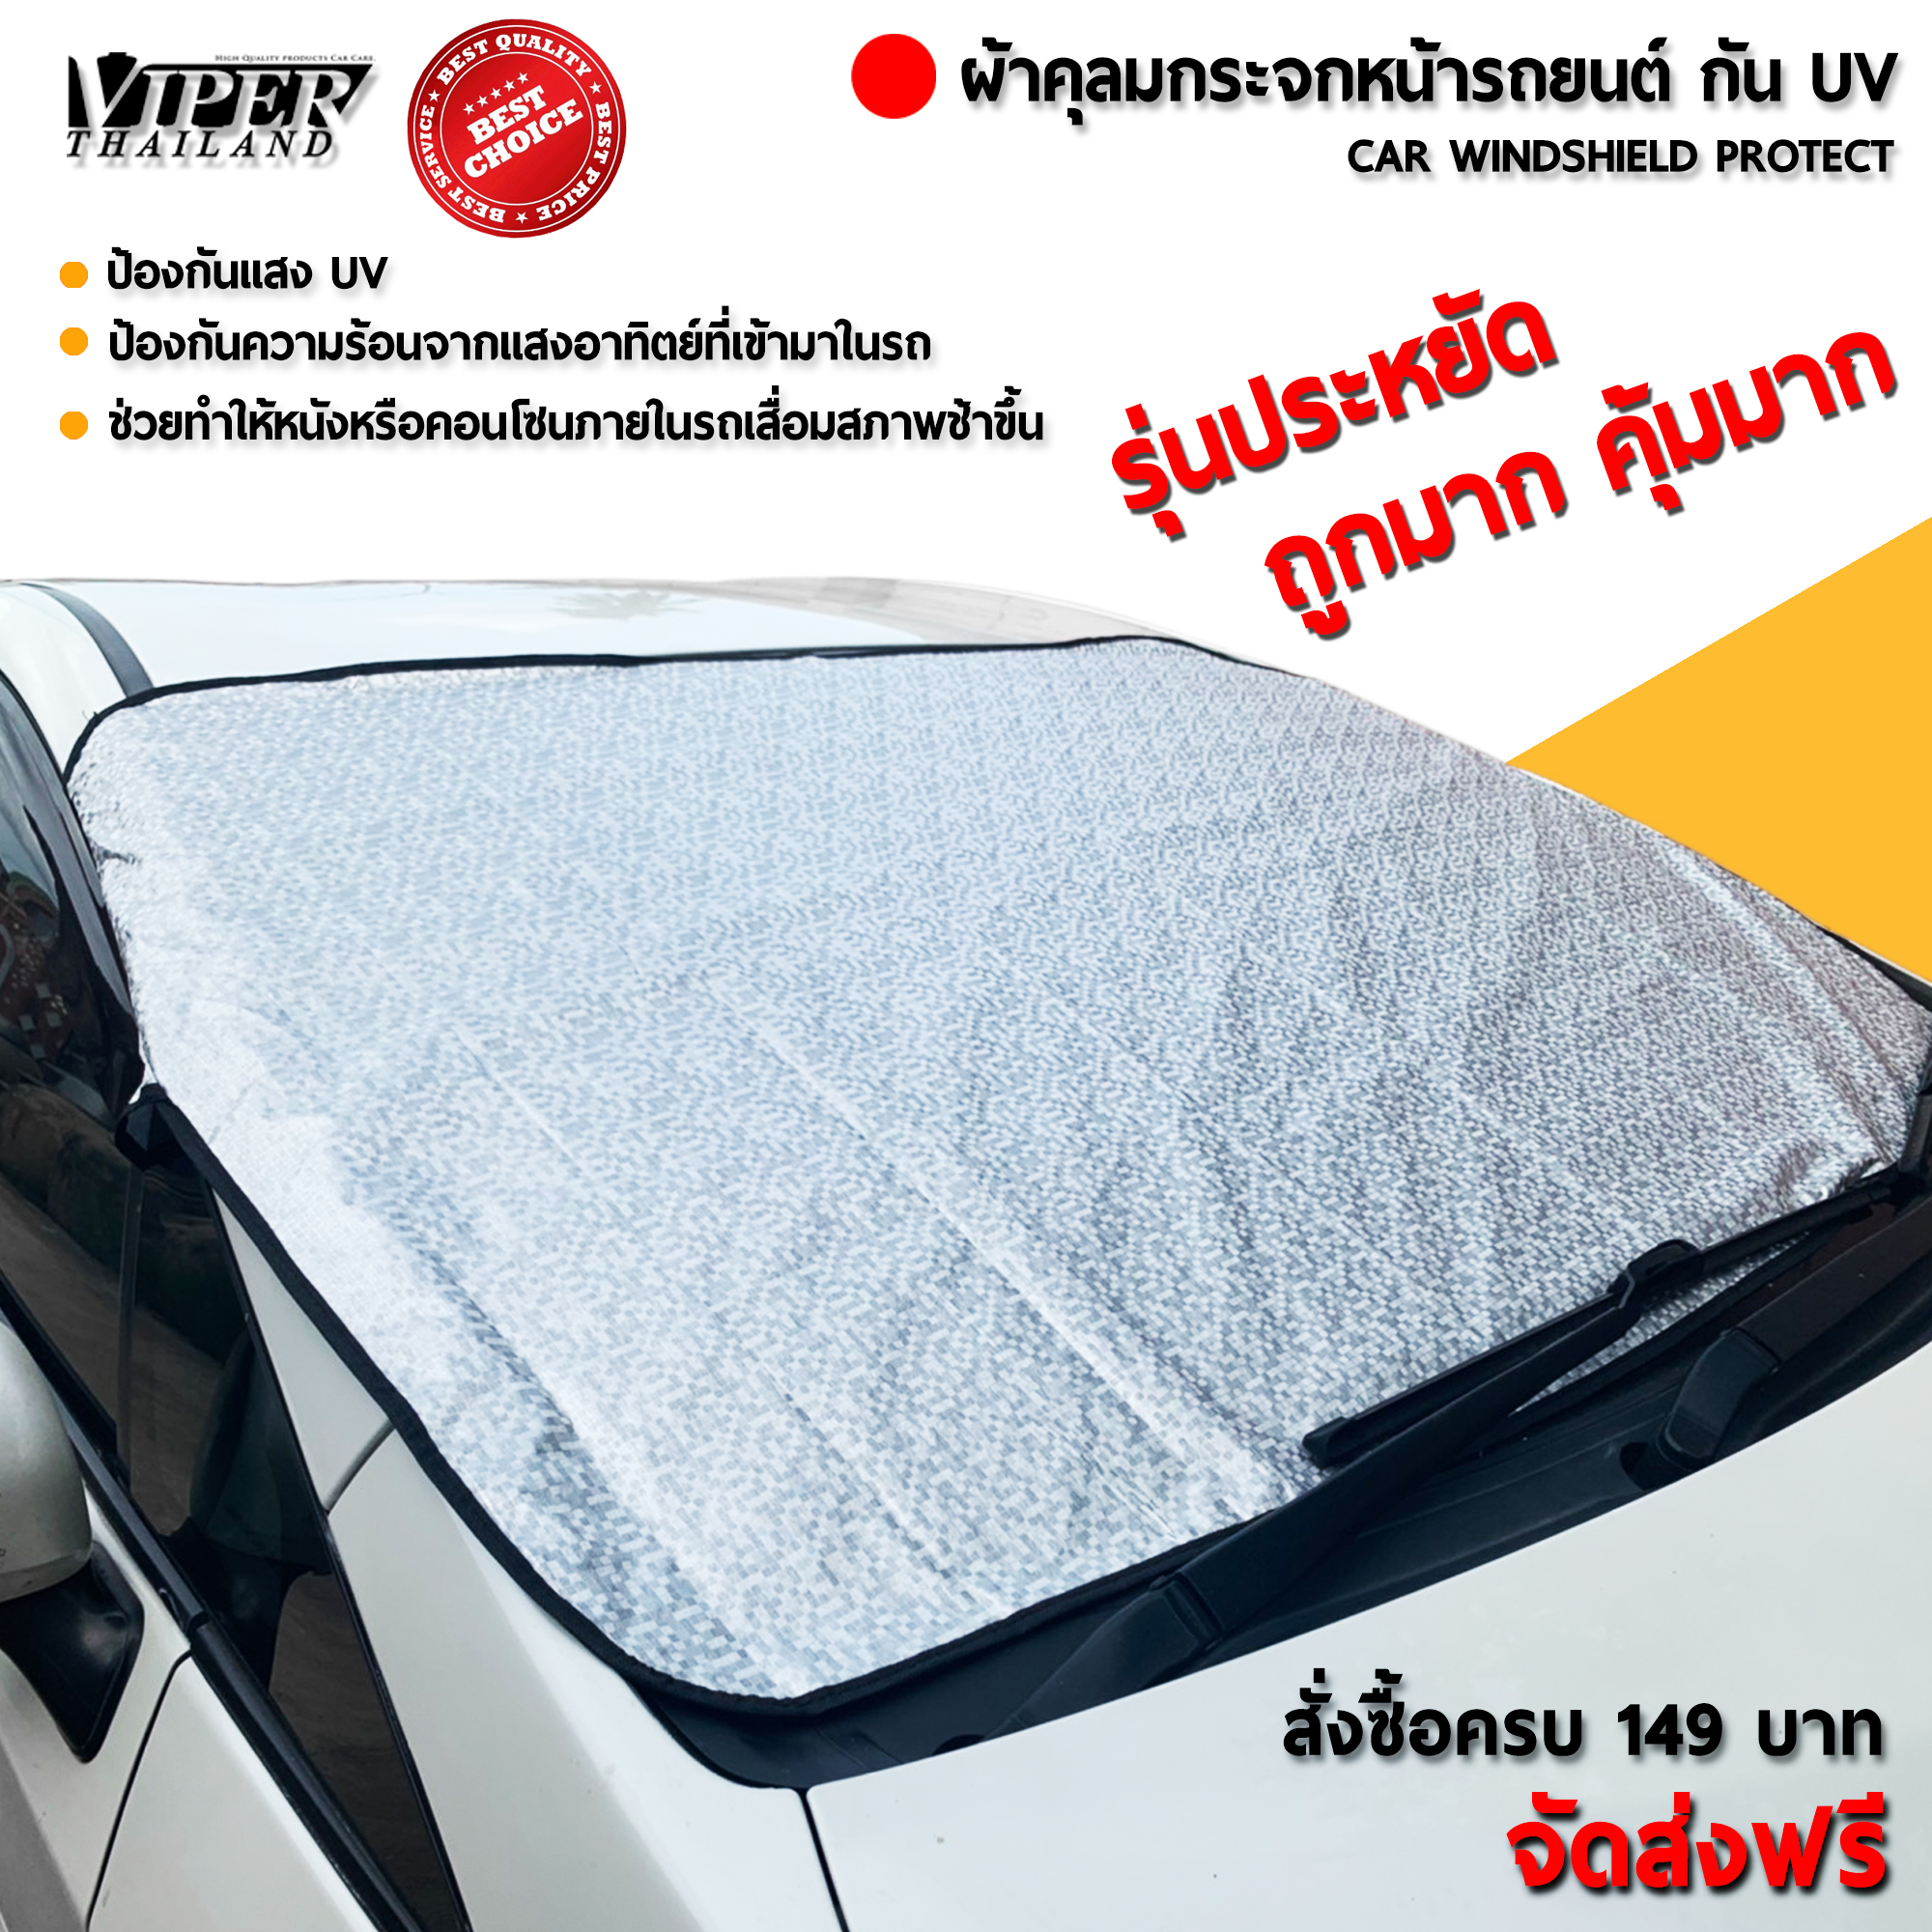 ผ้าคลุมกระจกรถยนต์ ผ้าคลุมหน้ารถบังแดด บังแดดรถยนต์ รุ่นประหยัด Viper Thailand